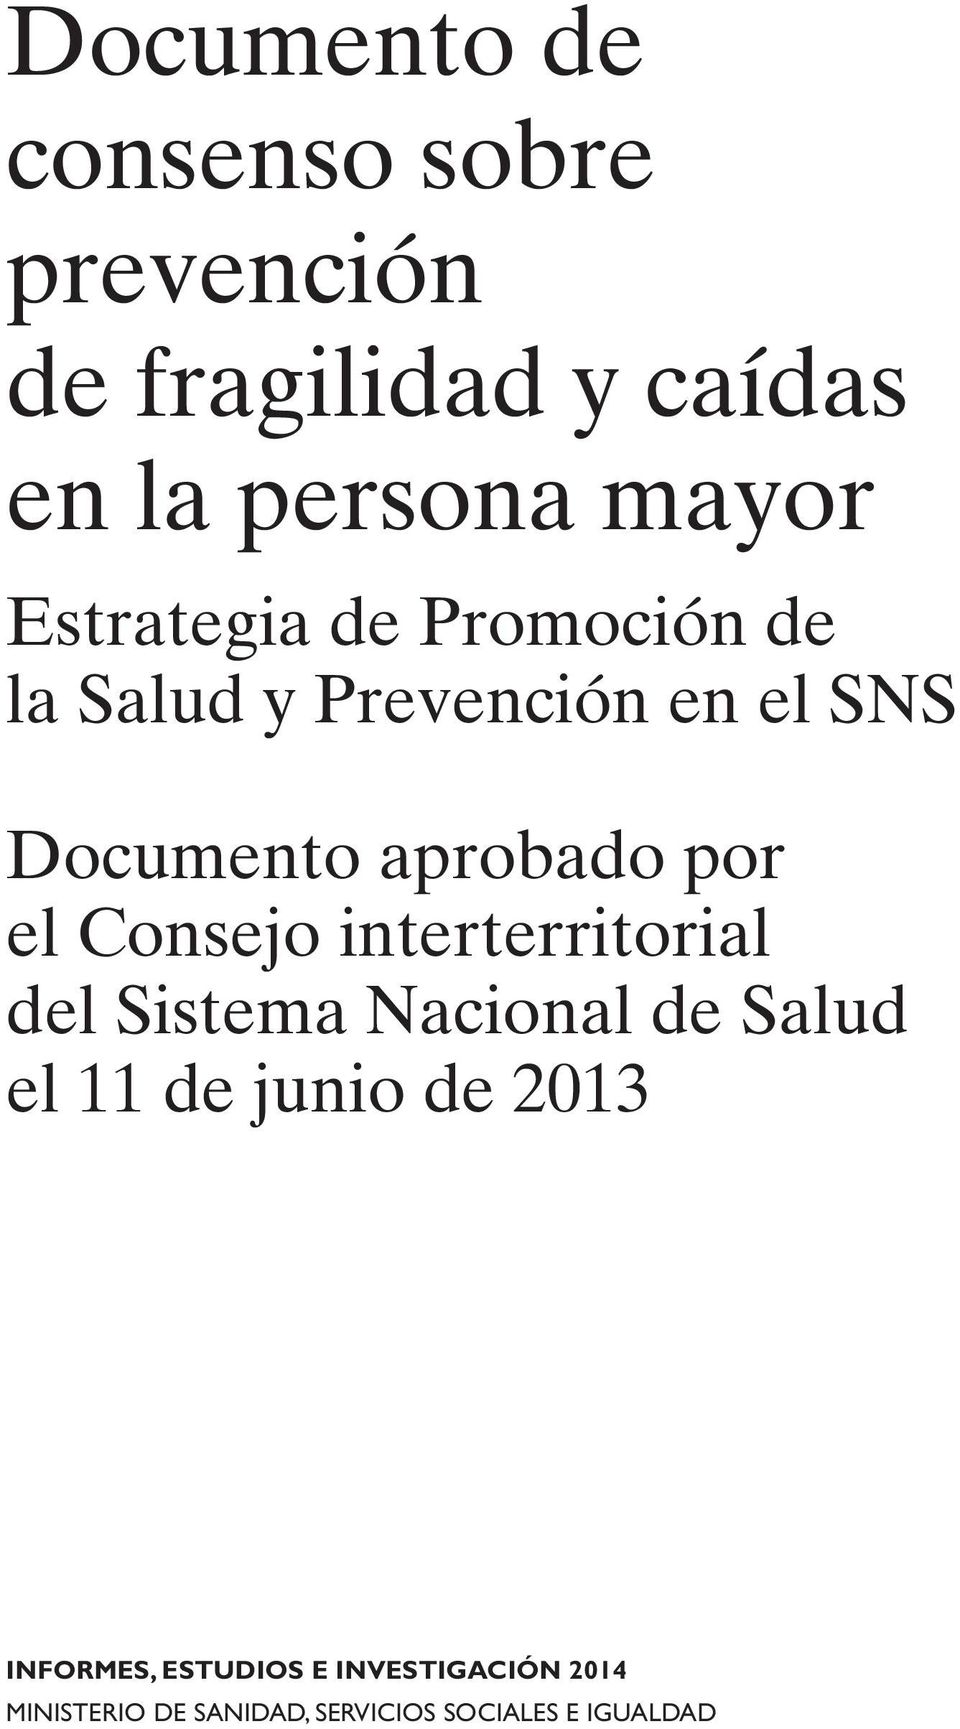 Consejo interterritorial del Sistema Nacional de Salud el 11 de junio de 2013